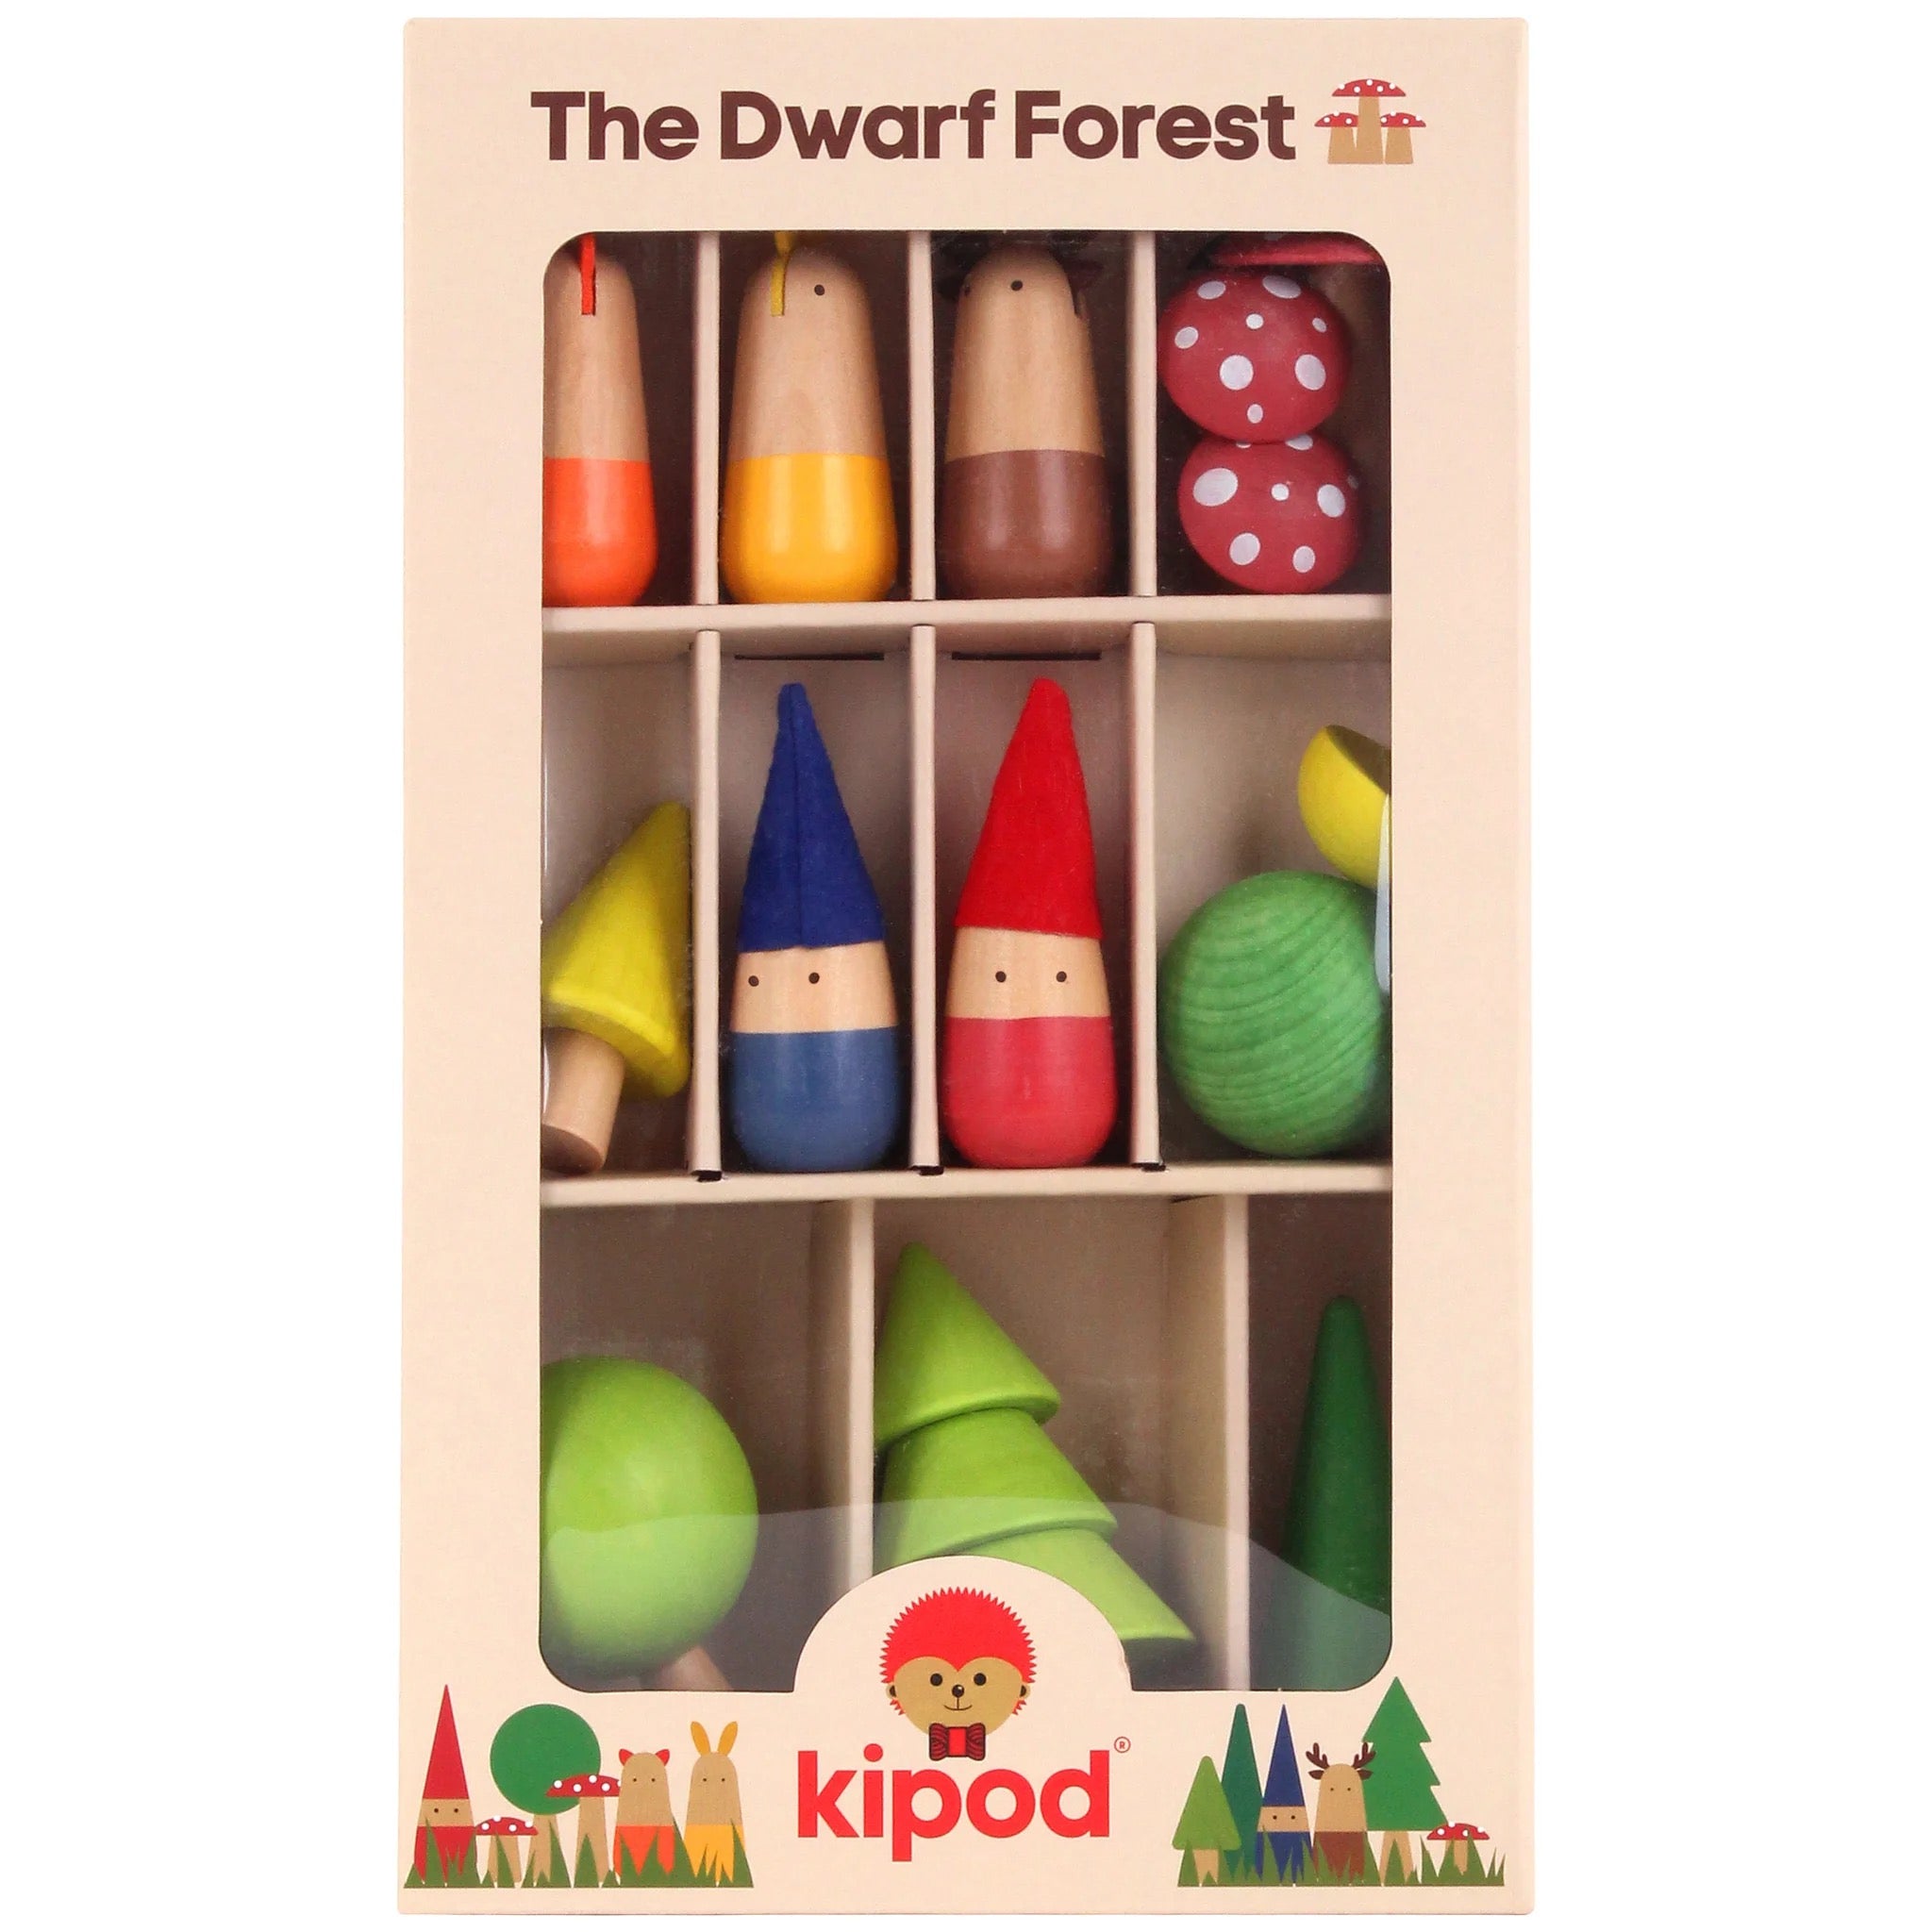 Dwarf Forrest by Kipod #KD-100